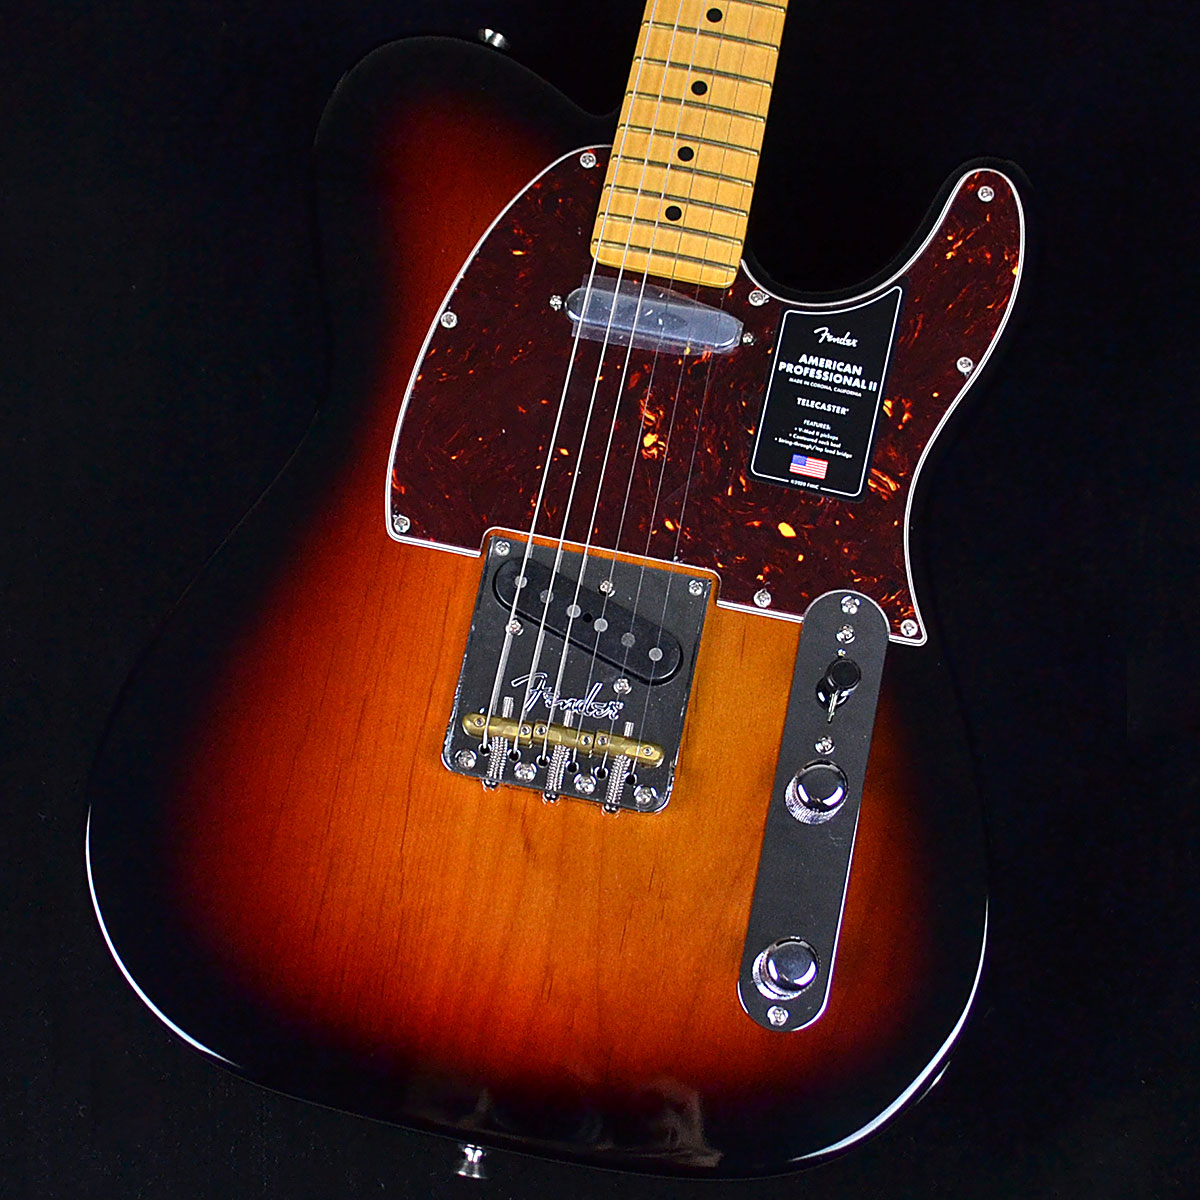 Fender American professional II テレキャスター